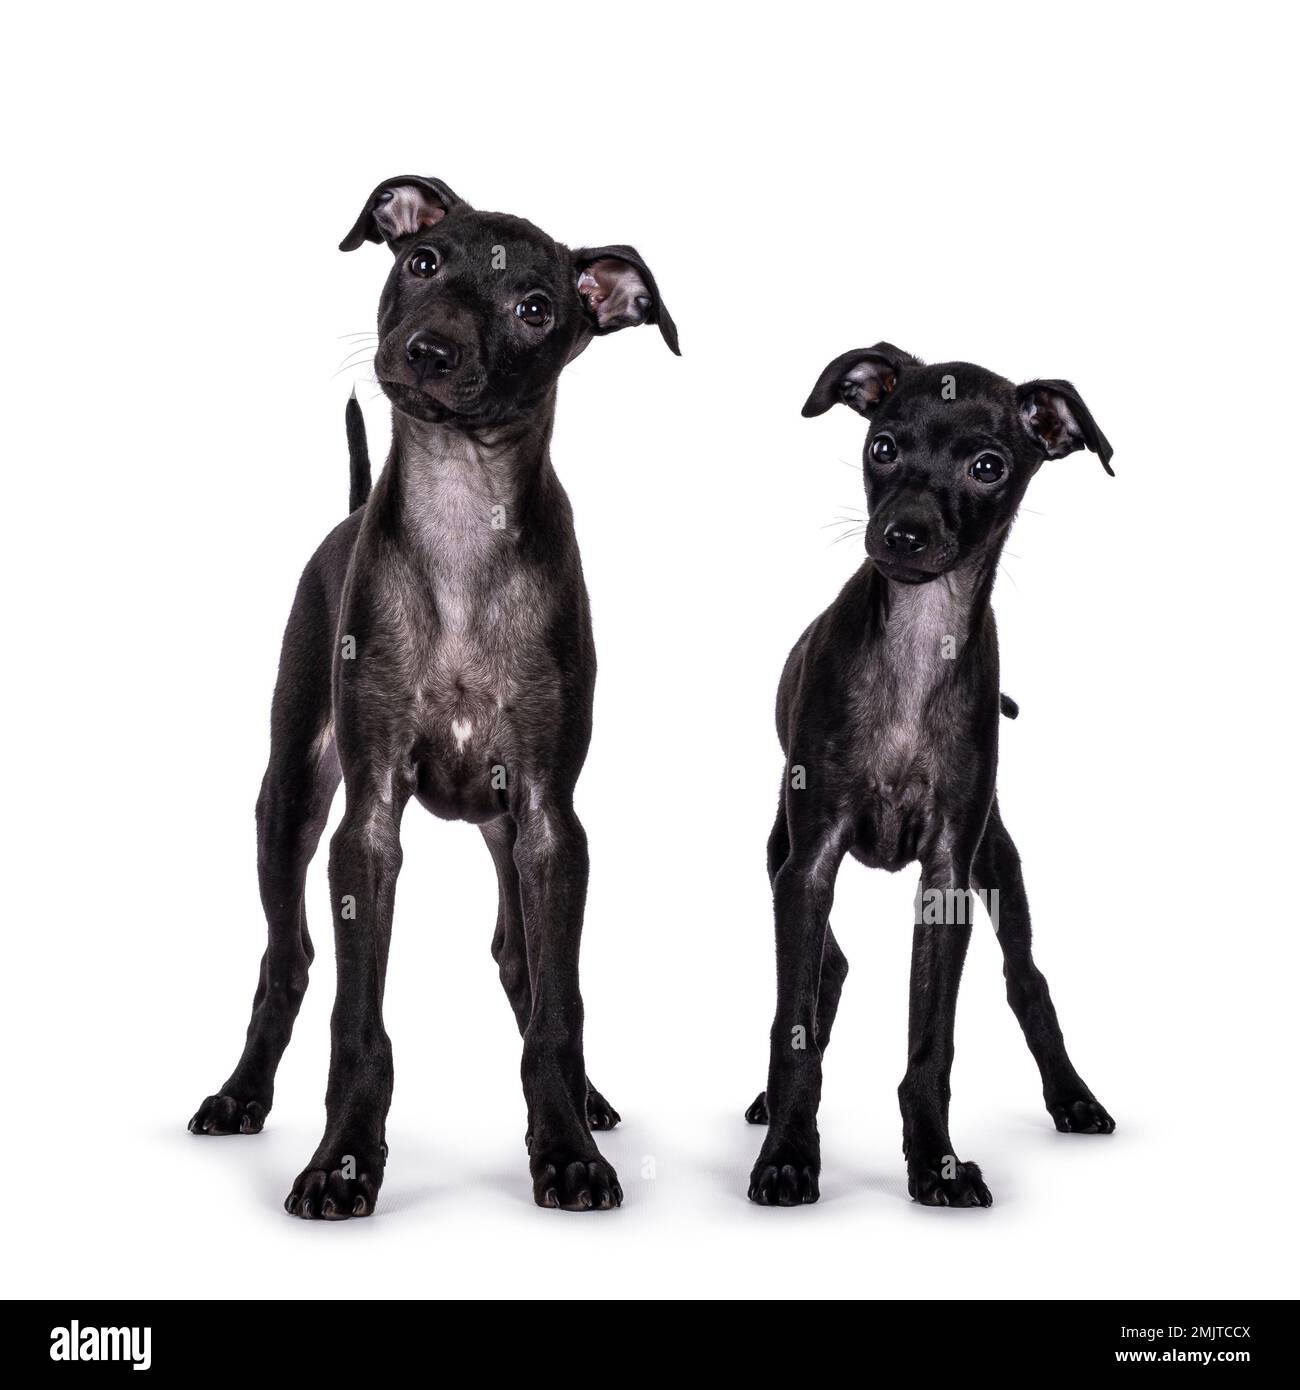 Süßes Duo von 2 italienischen Greyhound alias Italienische Sighthound Welpen, die vorne stehen. Neben der Kamera. Isoliert auf weißem Hintergrund. Stockfoto